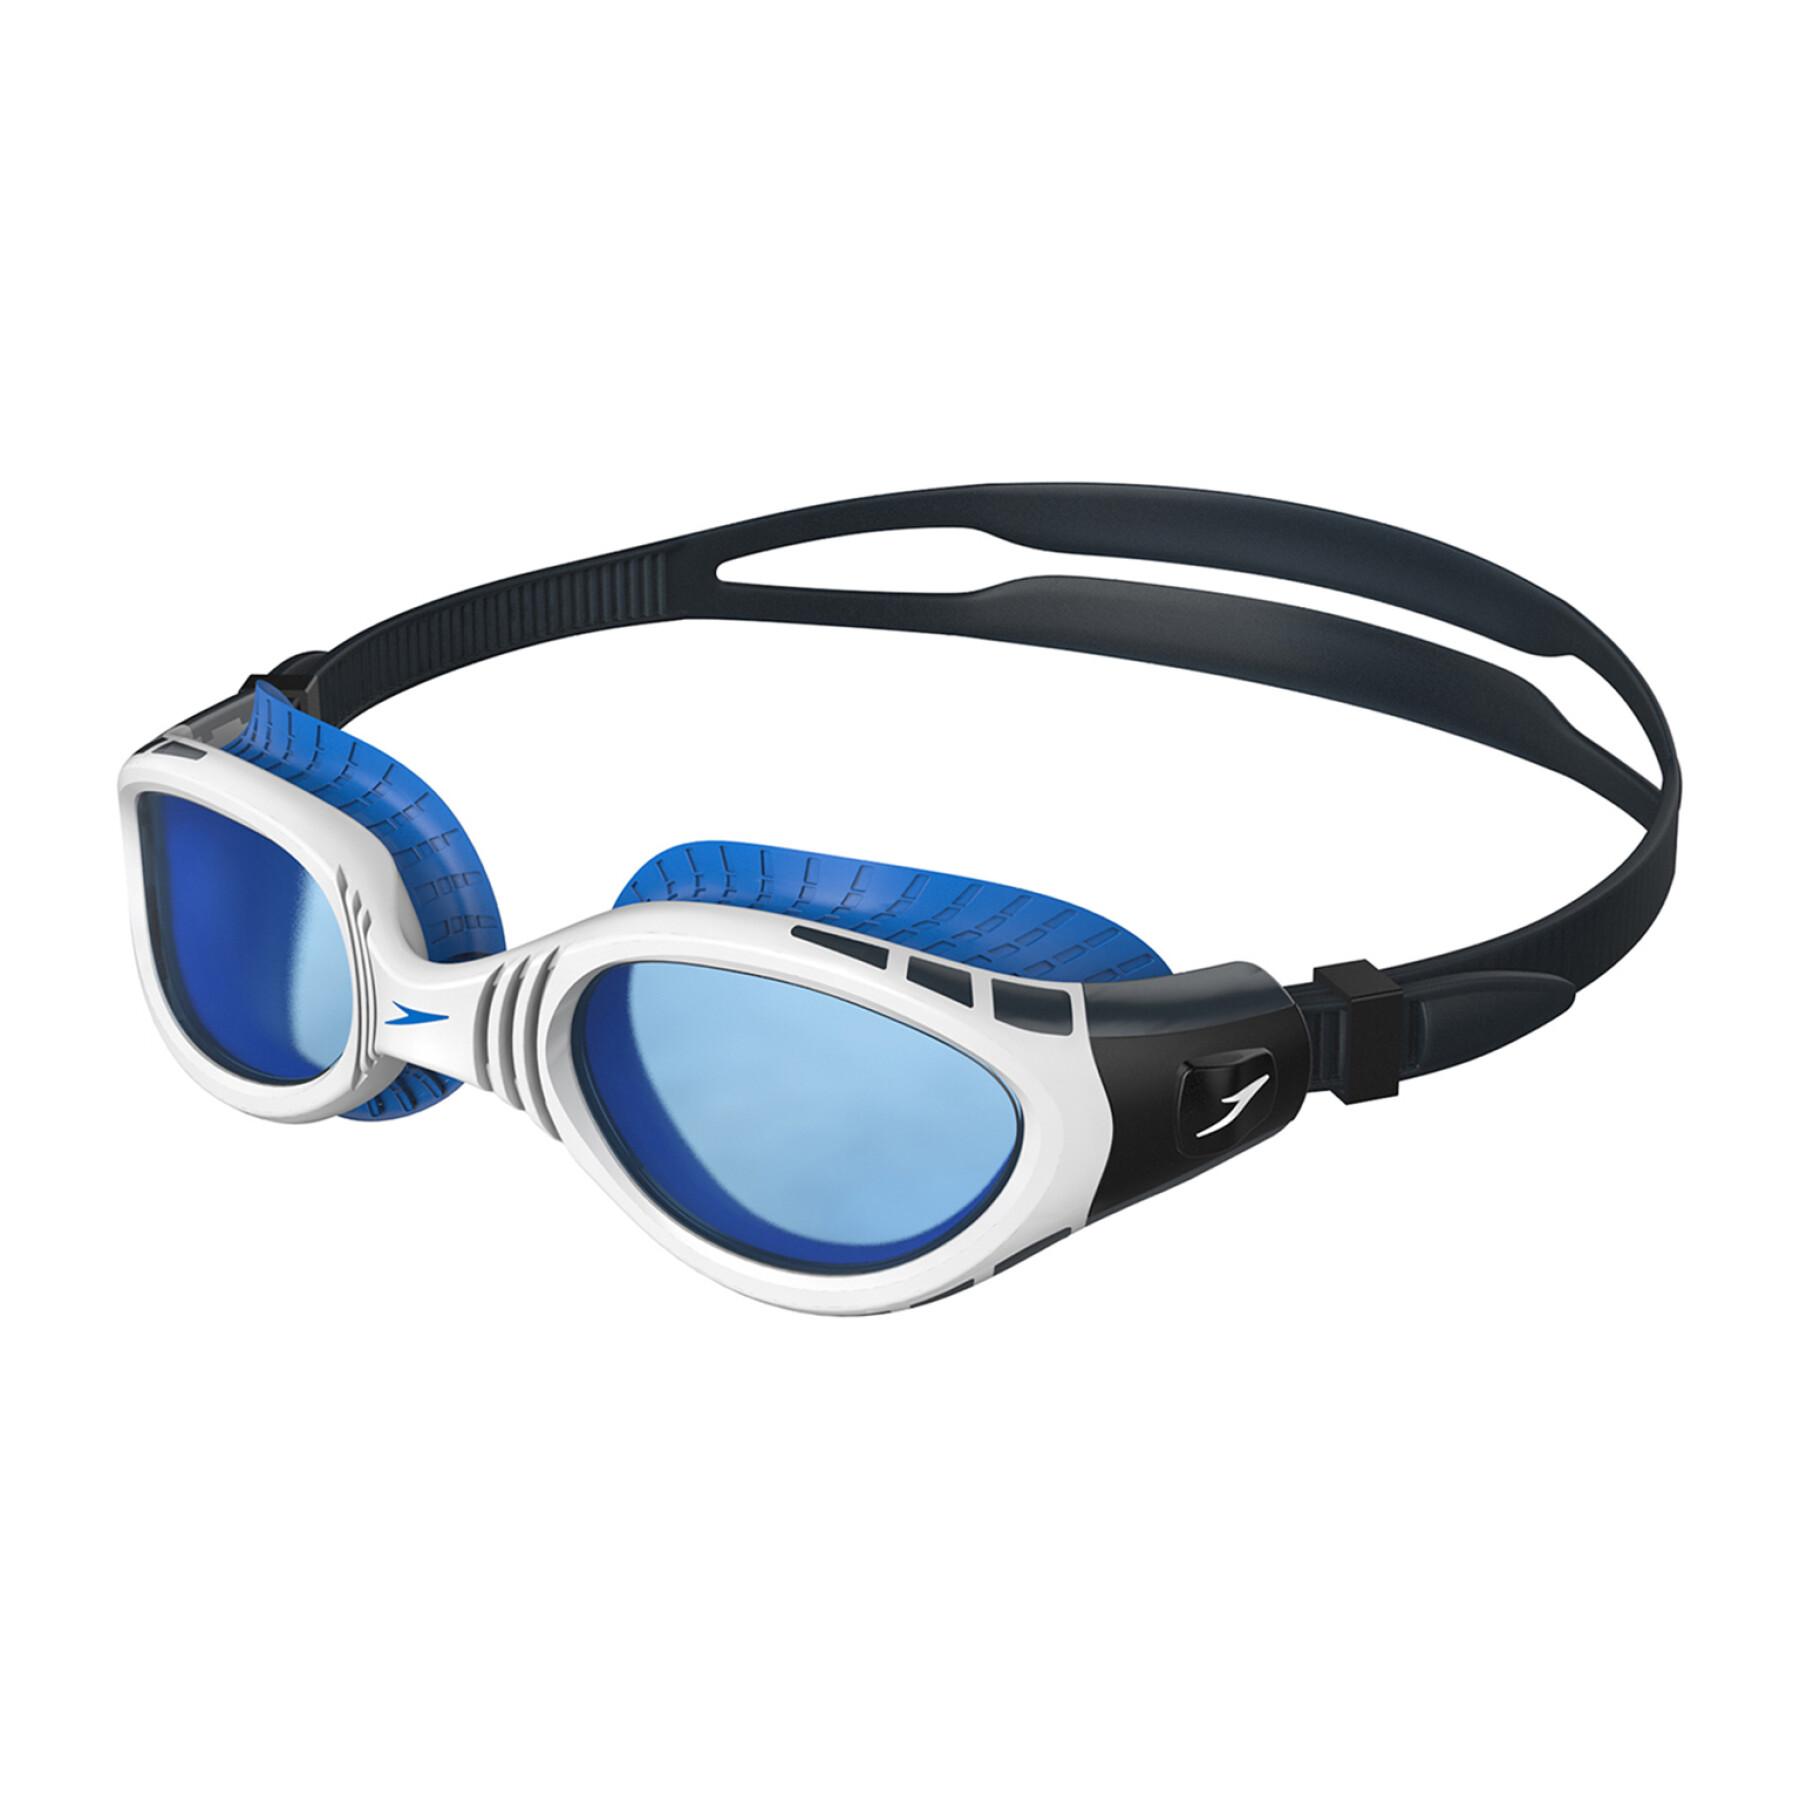 Óculos de natação Speedo Futura Biofuse Flex